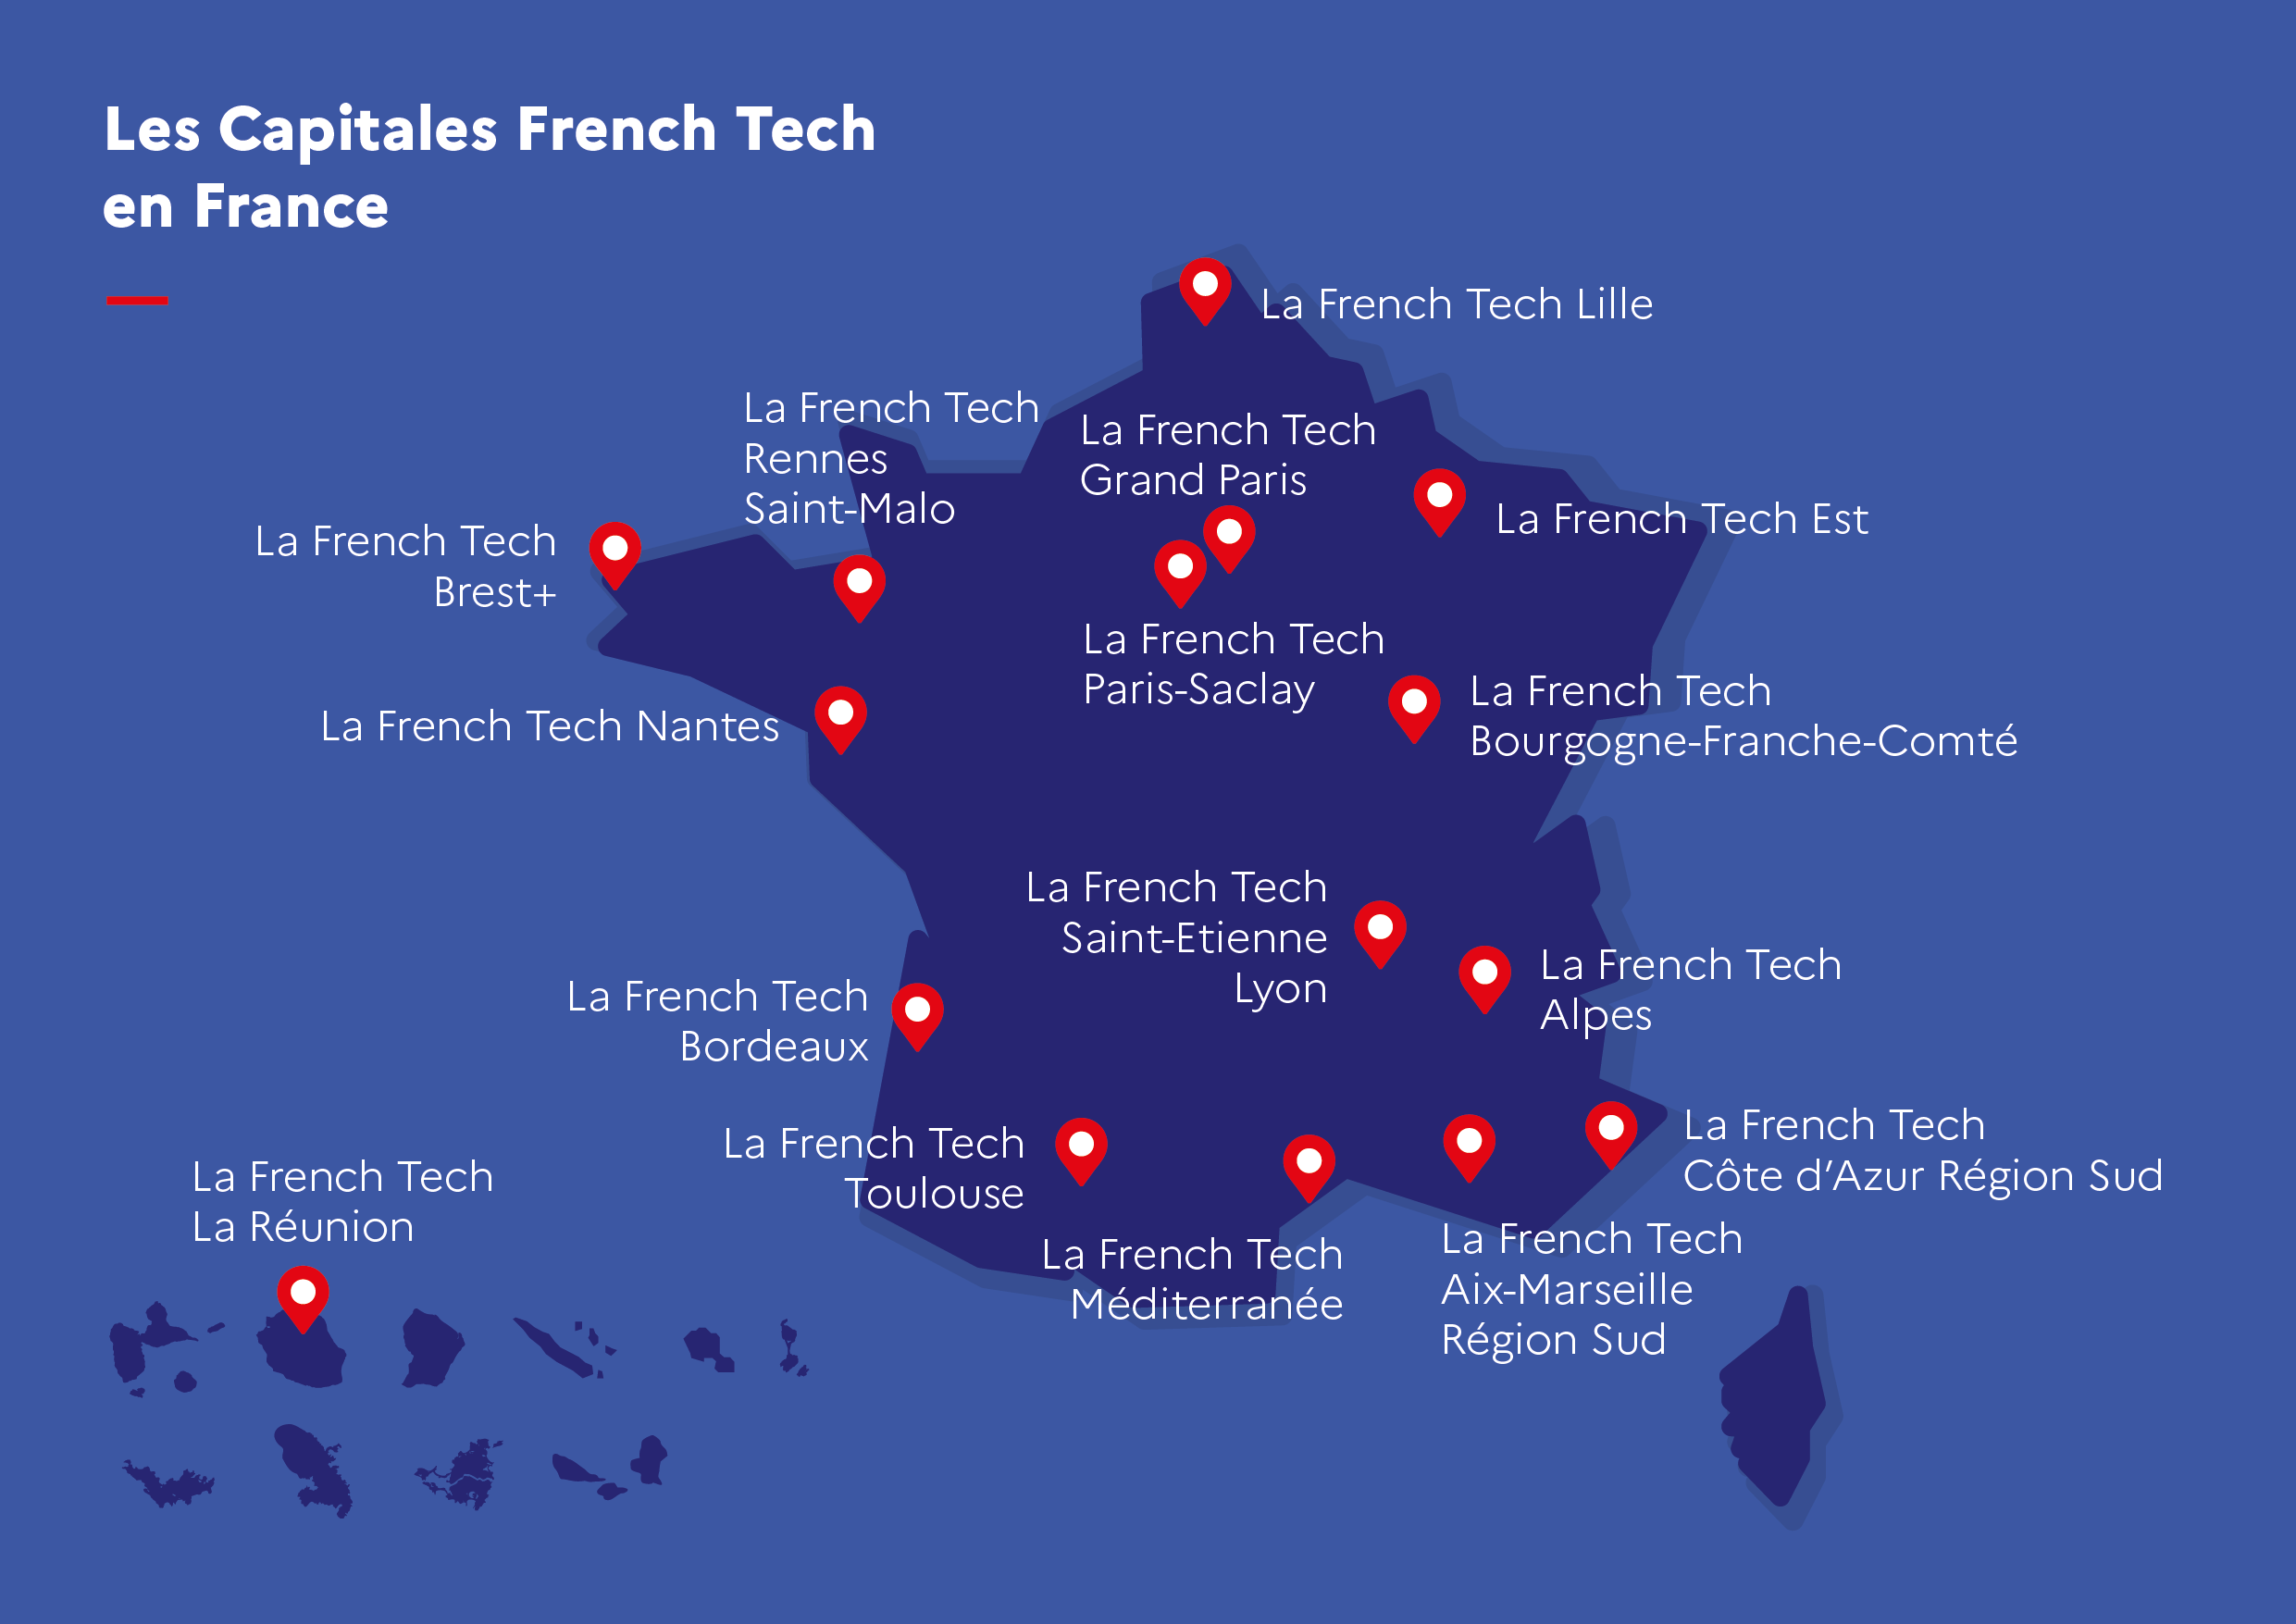 La Réunion entre dans le réseau des Capitales French Tech, en faisant ainsi la première Capitale French Tech des Outre-mer